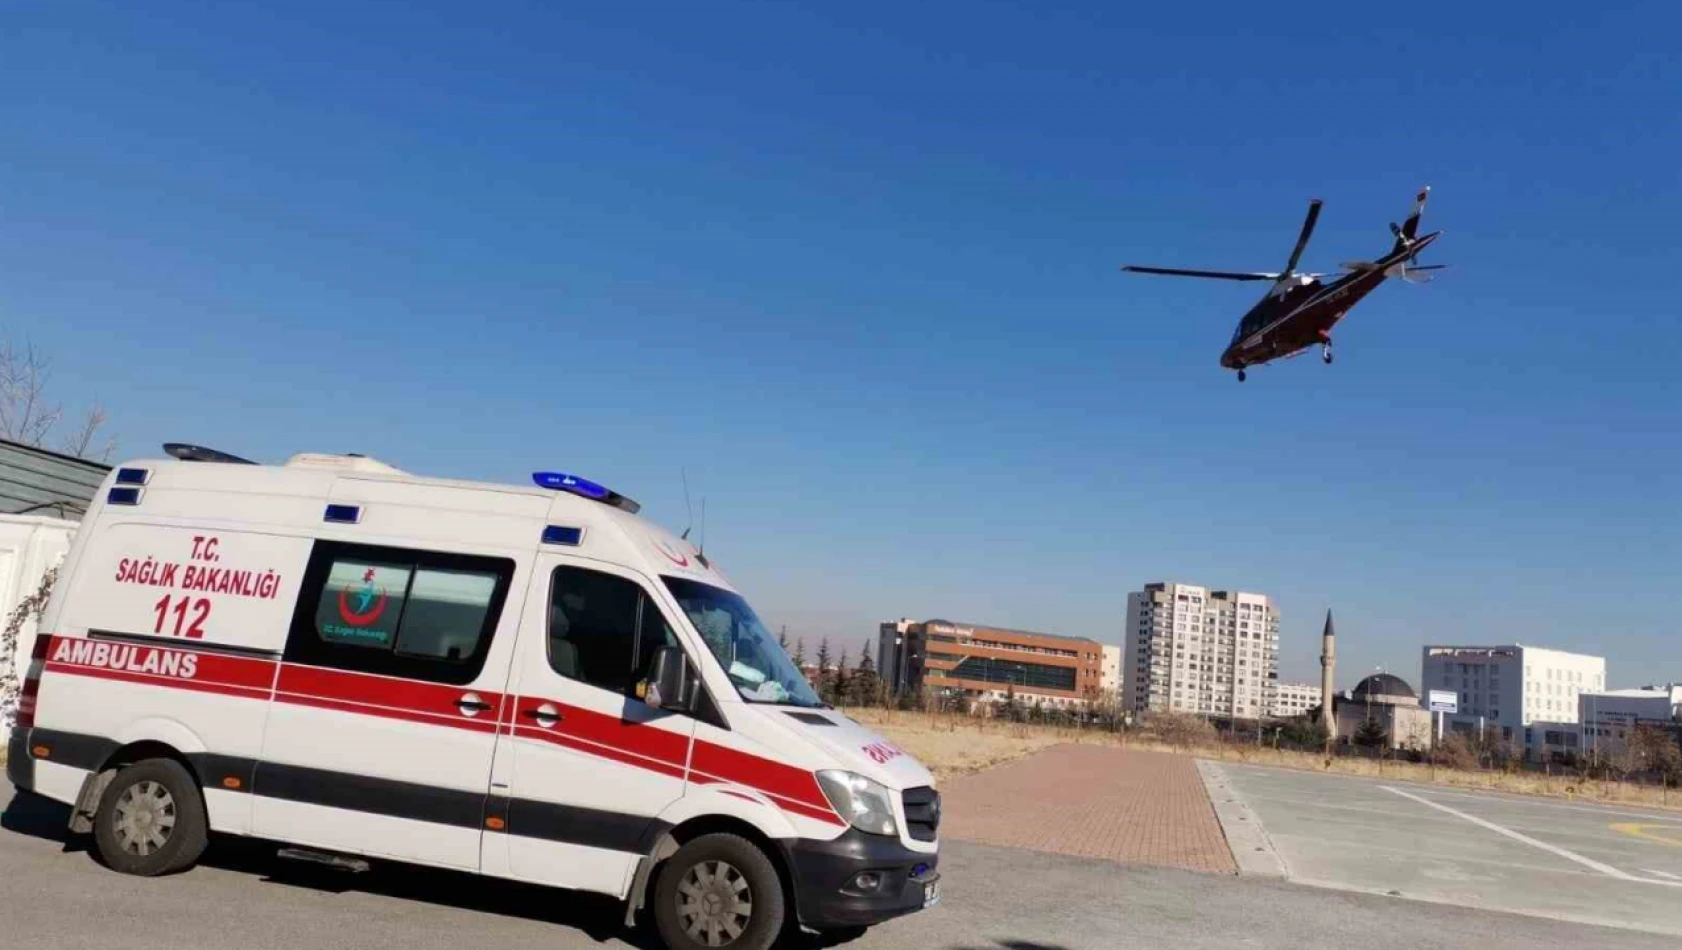 Kayseri'de hava ambulansı umut olmaya devam ediyor